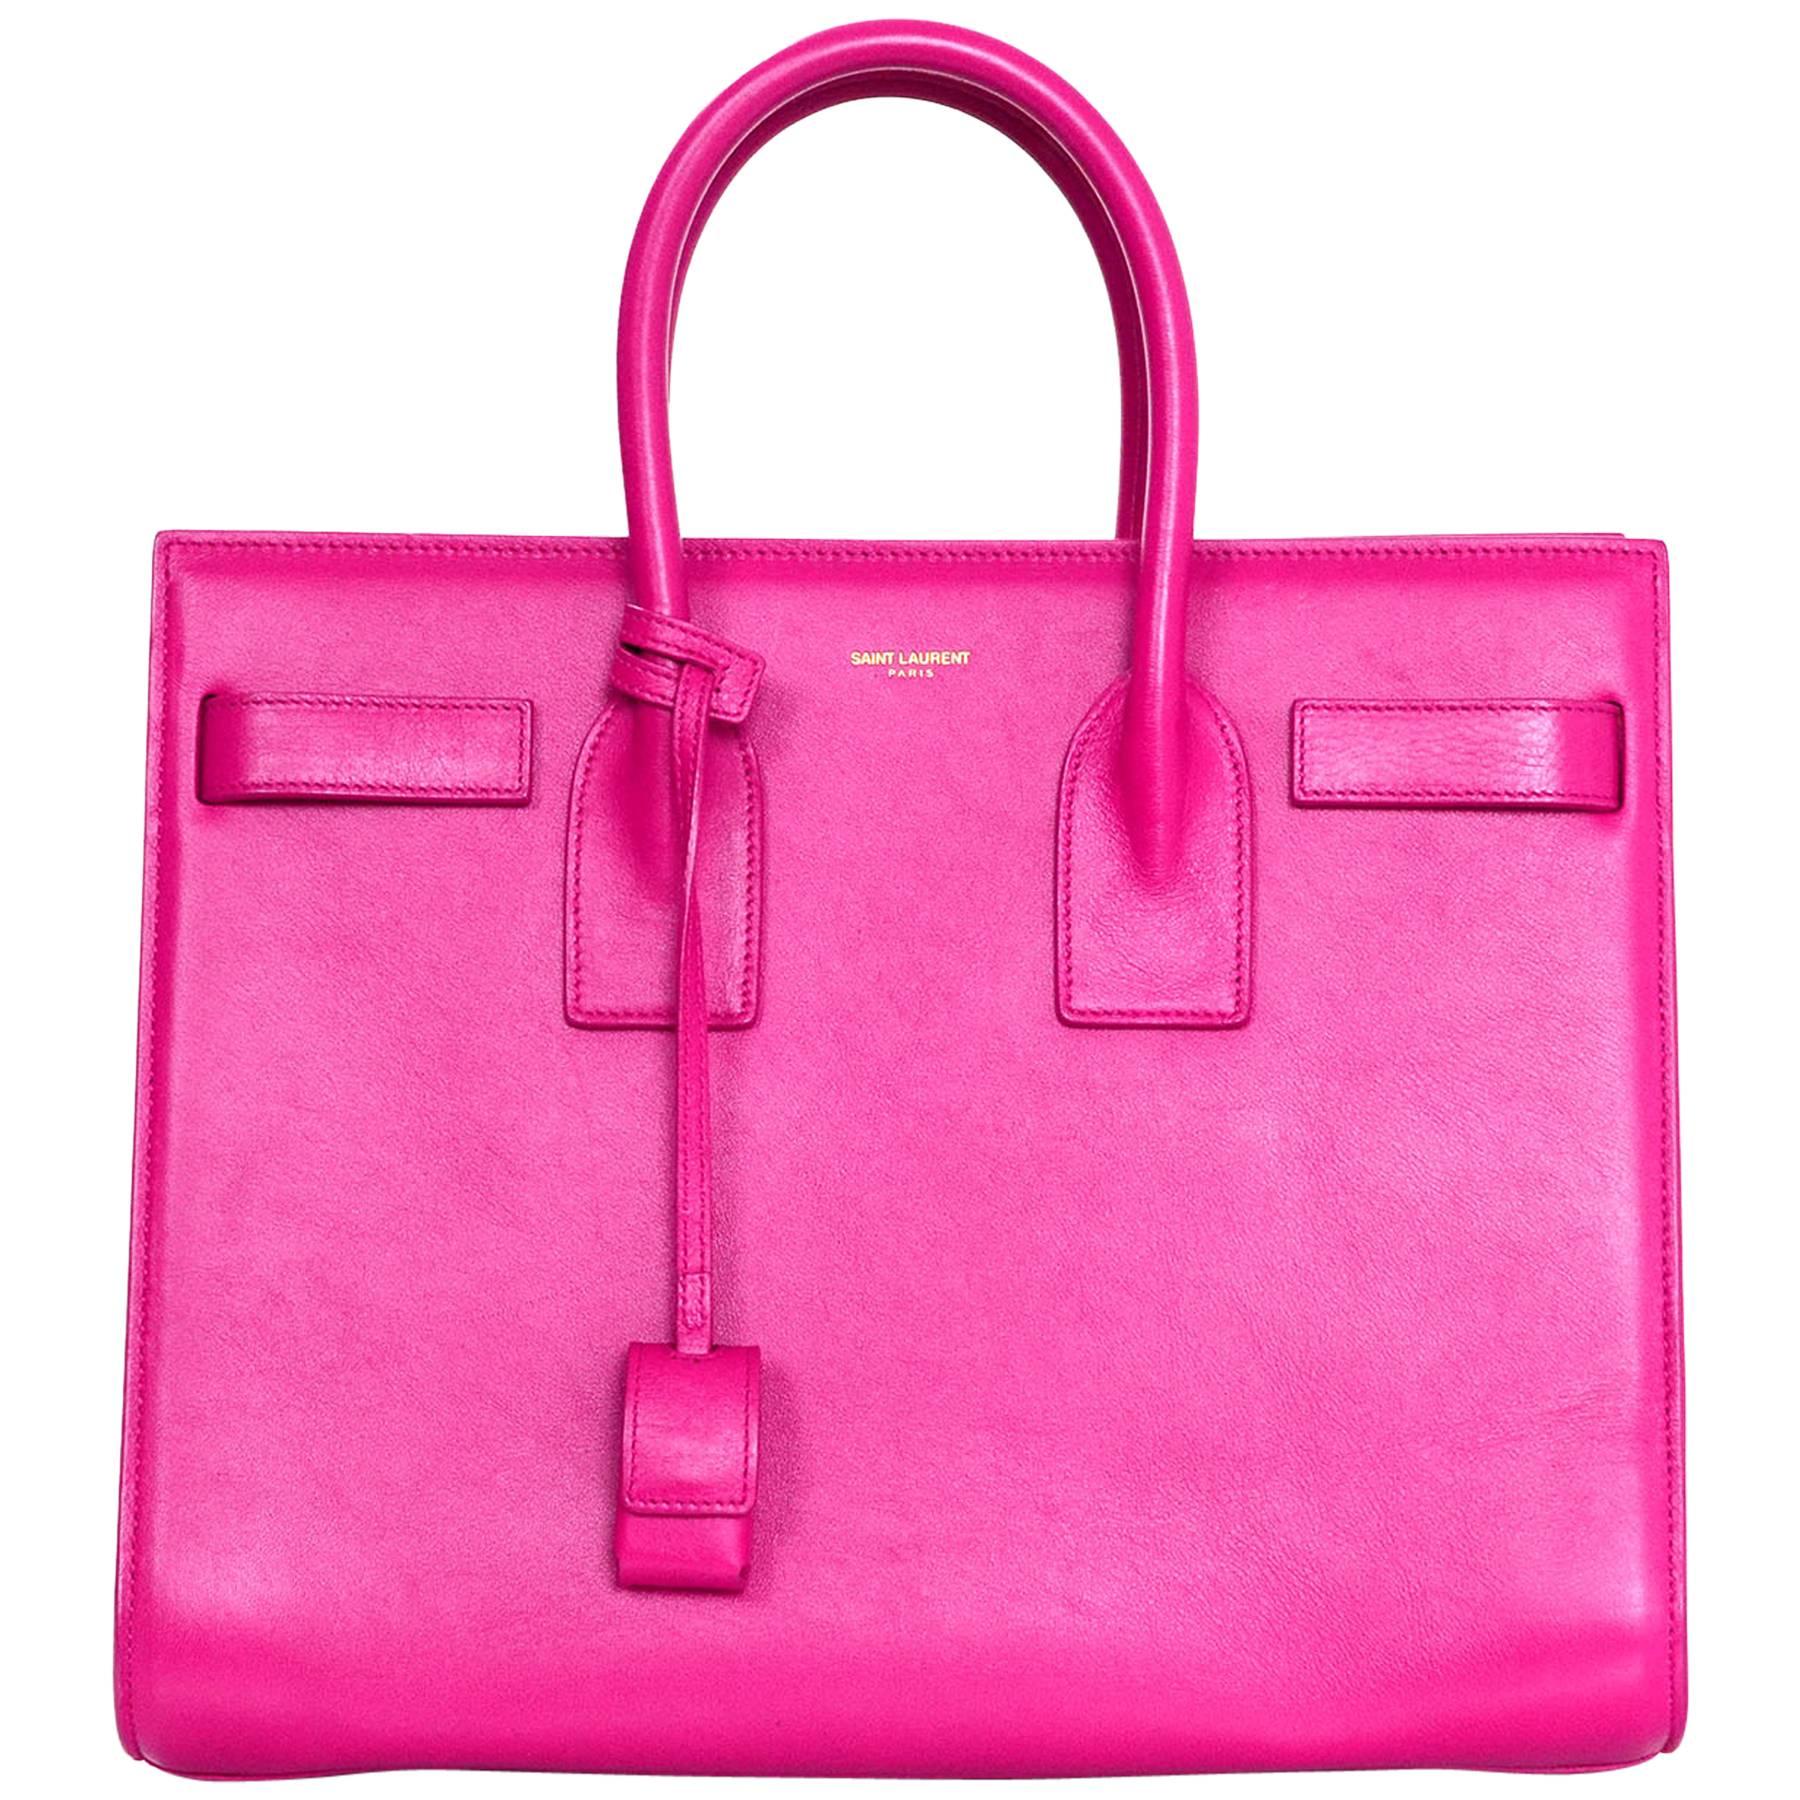 Saint Laurent Pink Small Sac De Jour Tote Bag w/ Strap